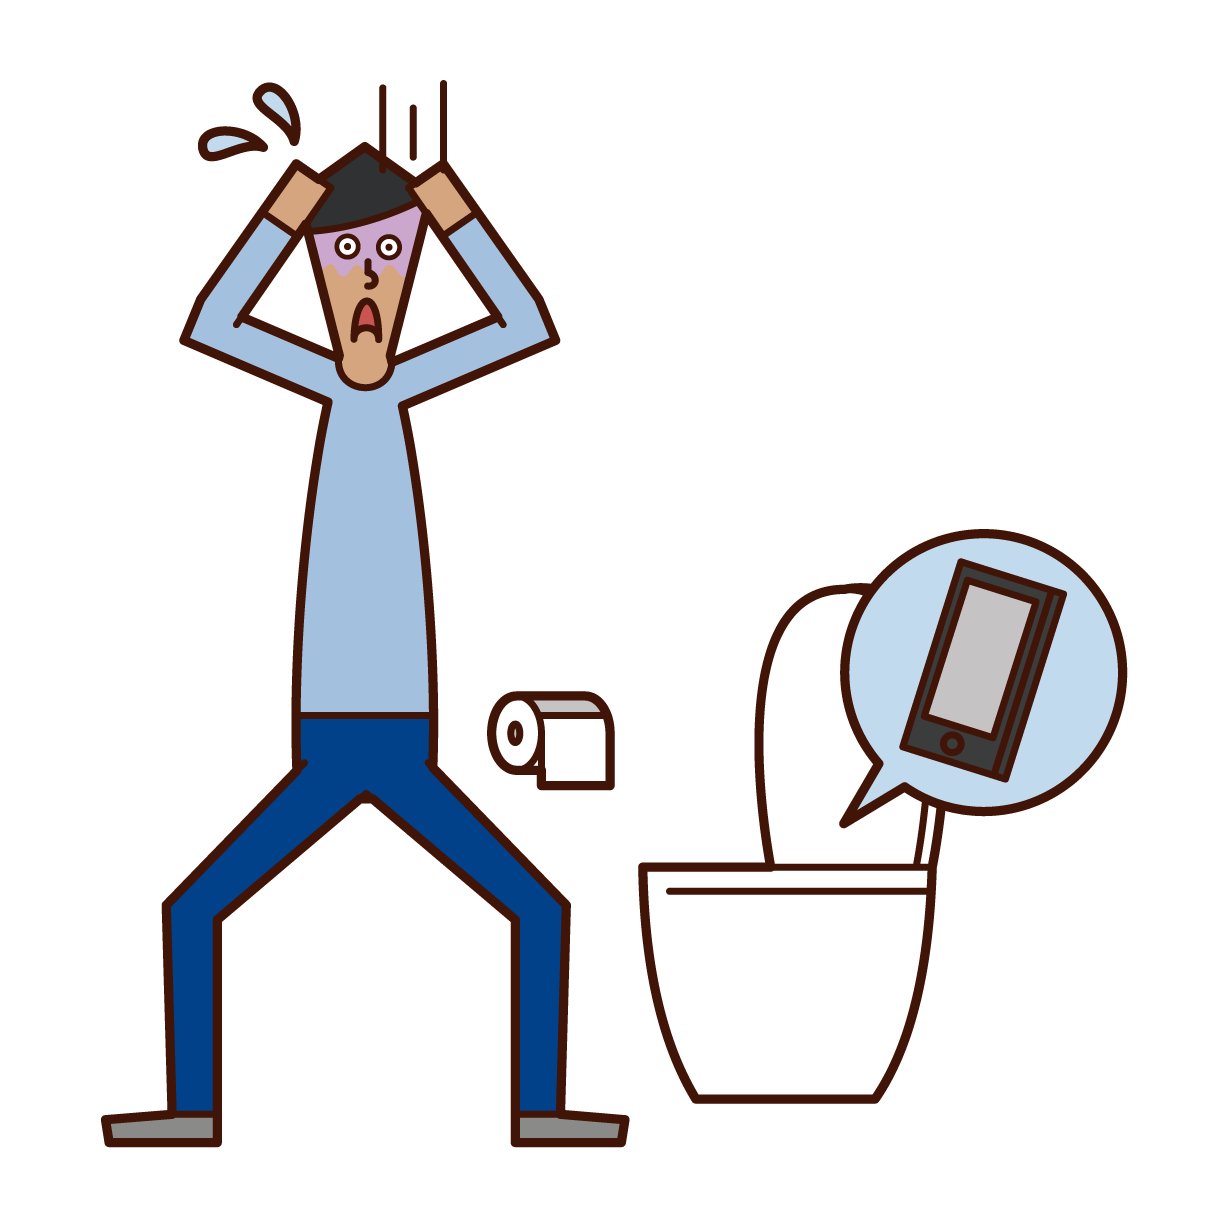 トイレの便器にスマートフォンを落とした人 男性 のイラスト フリーイラスト素材 Kukukeke ククケケ